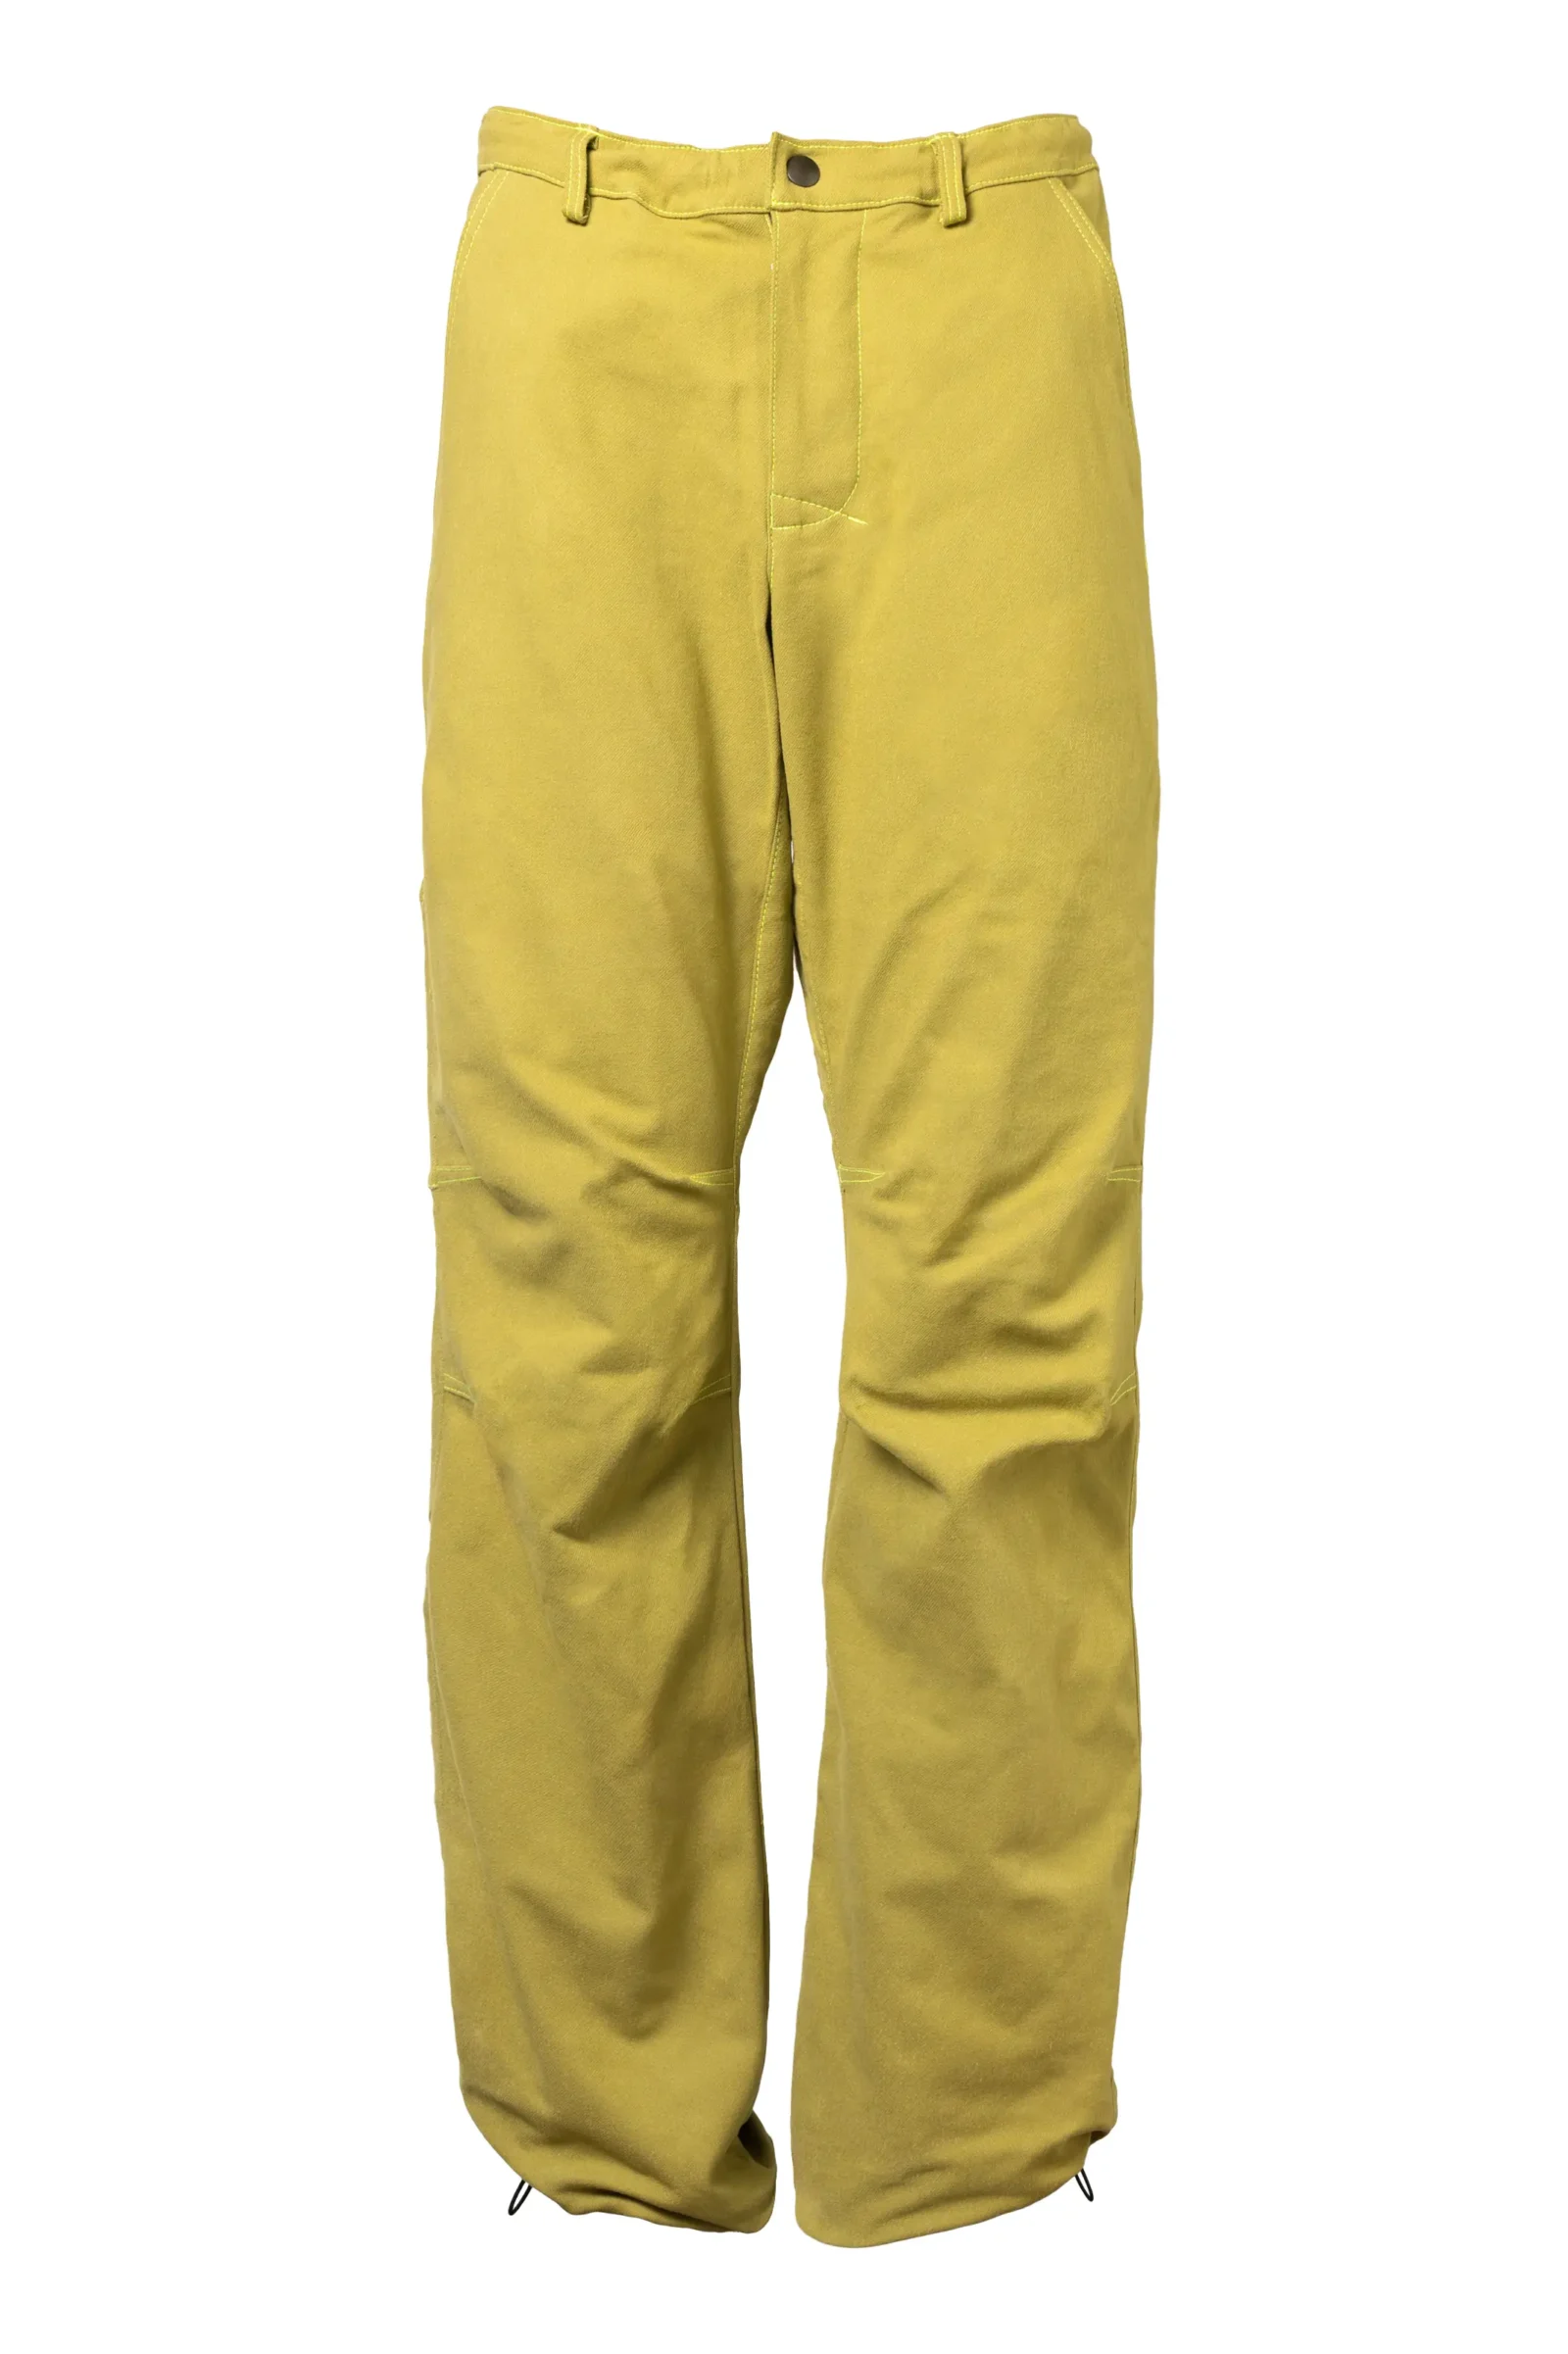 Pantalone arrampicata uomo - ultra elasticizzato - verde lime - BILLY 2 MONVIC